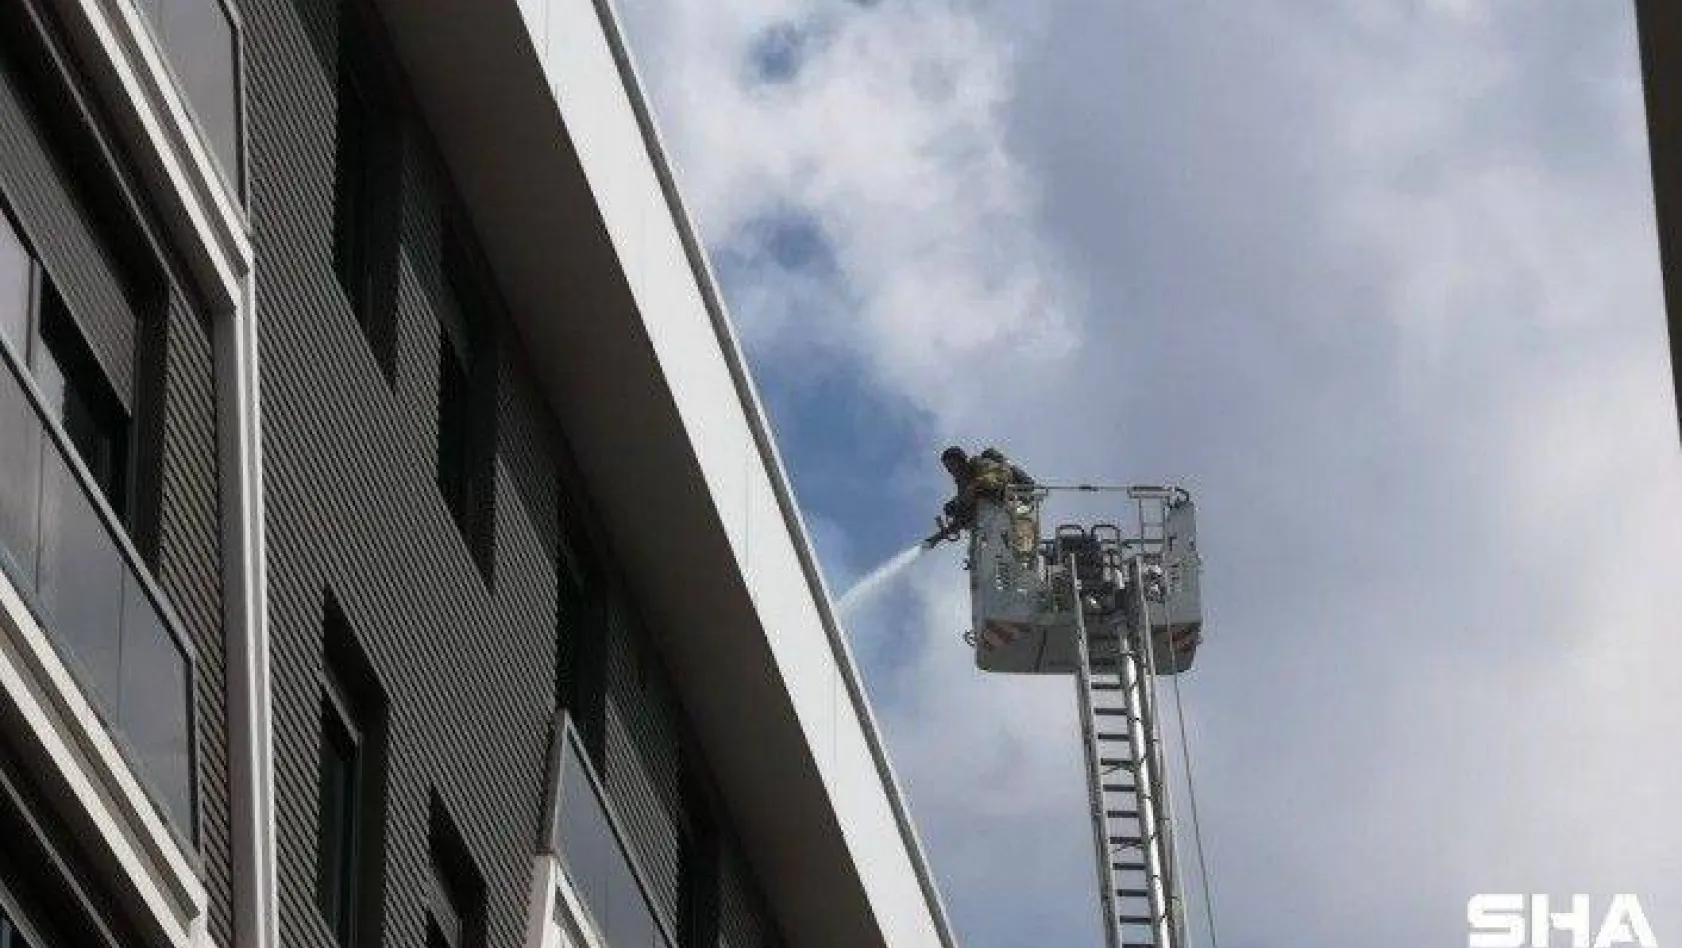 Kadıköy'de 5 katlı bir binanın teras katında yangın çıktı. İlk belirlemelere göre 3 kişi alevler içerisinde kaldı. Bölgeye çok sayıda polis itfaiye ve sağlık ekipleri sevk edildi.